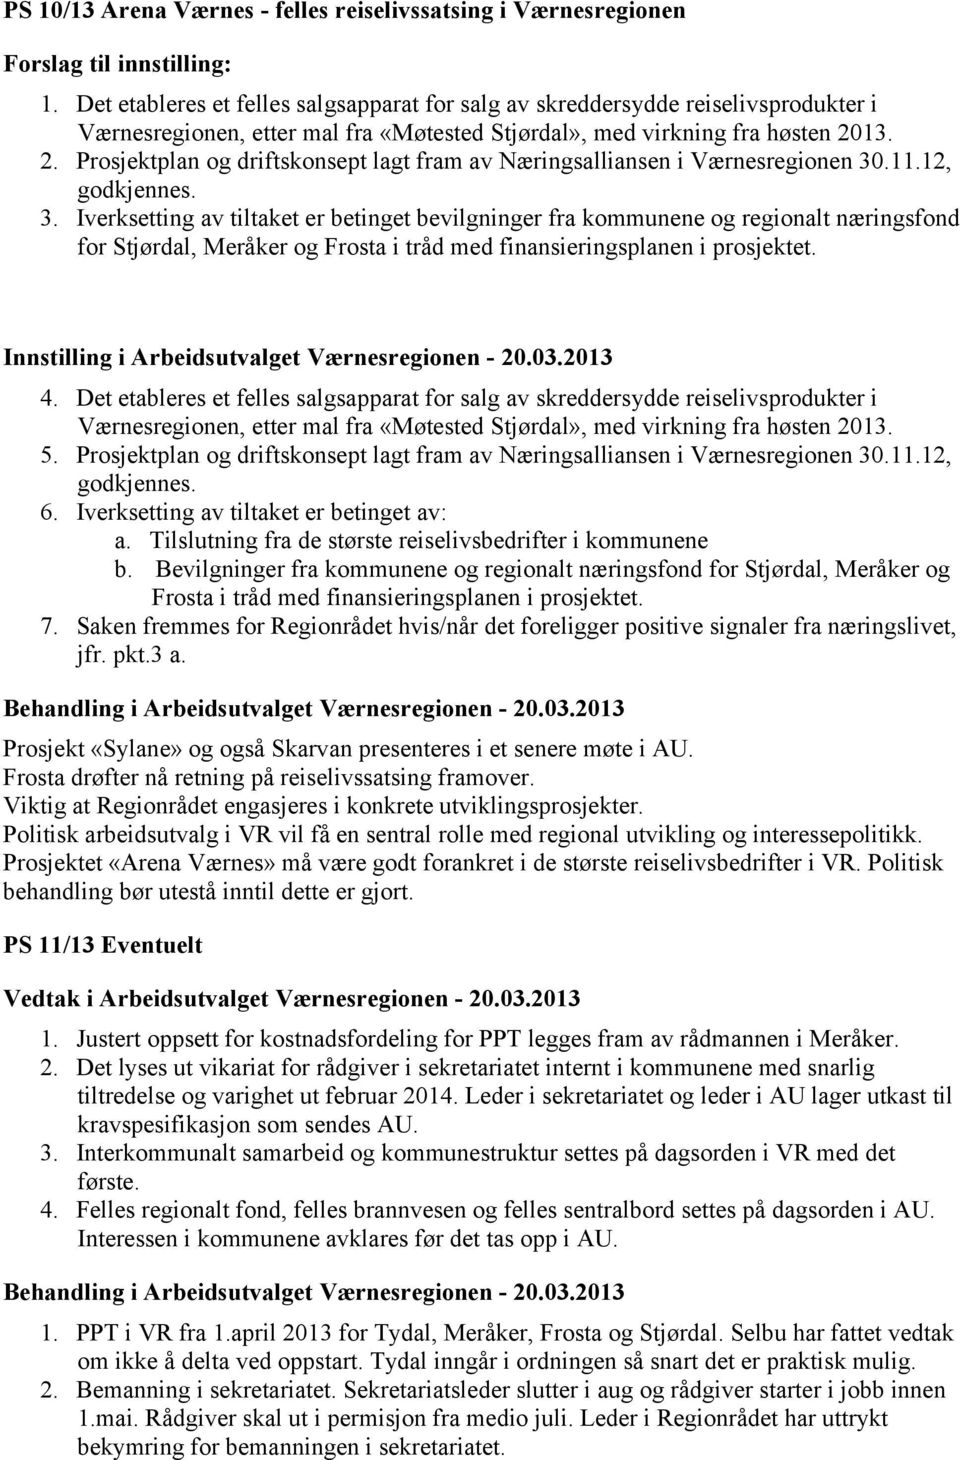 13. 2. Prosjektplan og driftskonsept lagt fram av Næringsalliansen i Værnesregionen 30